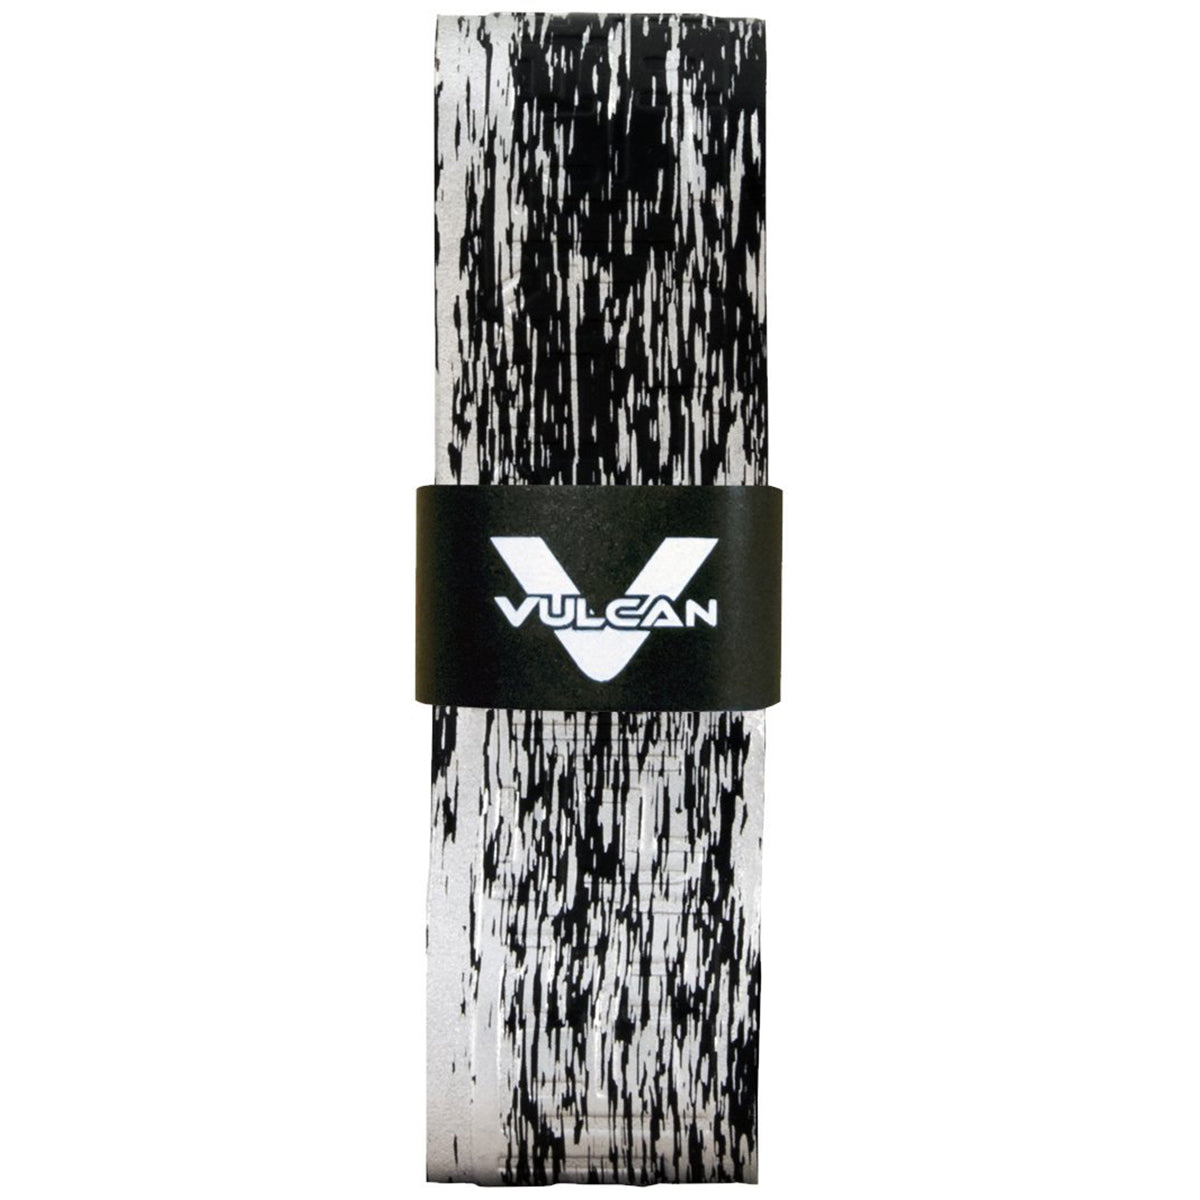 Vulcan Fade Series 1.75mm Ultralight Advanced Polymer Bat Grip Tape Wrap Vulcan